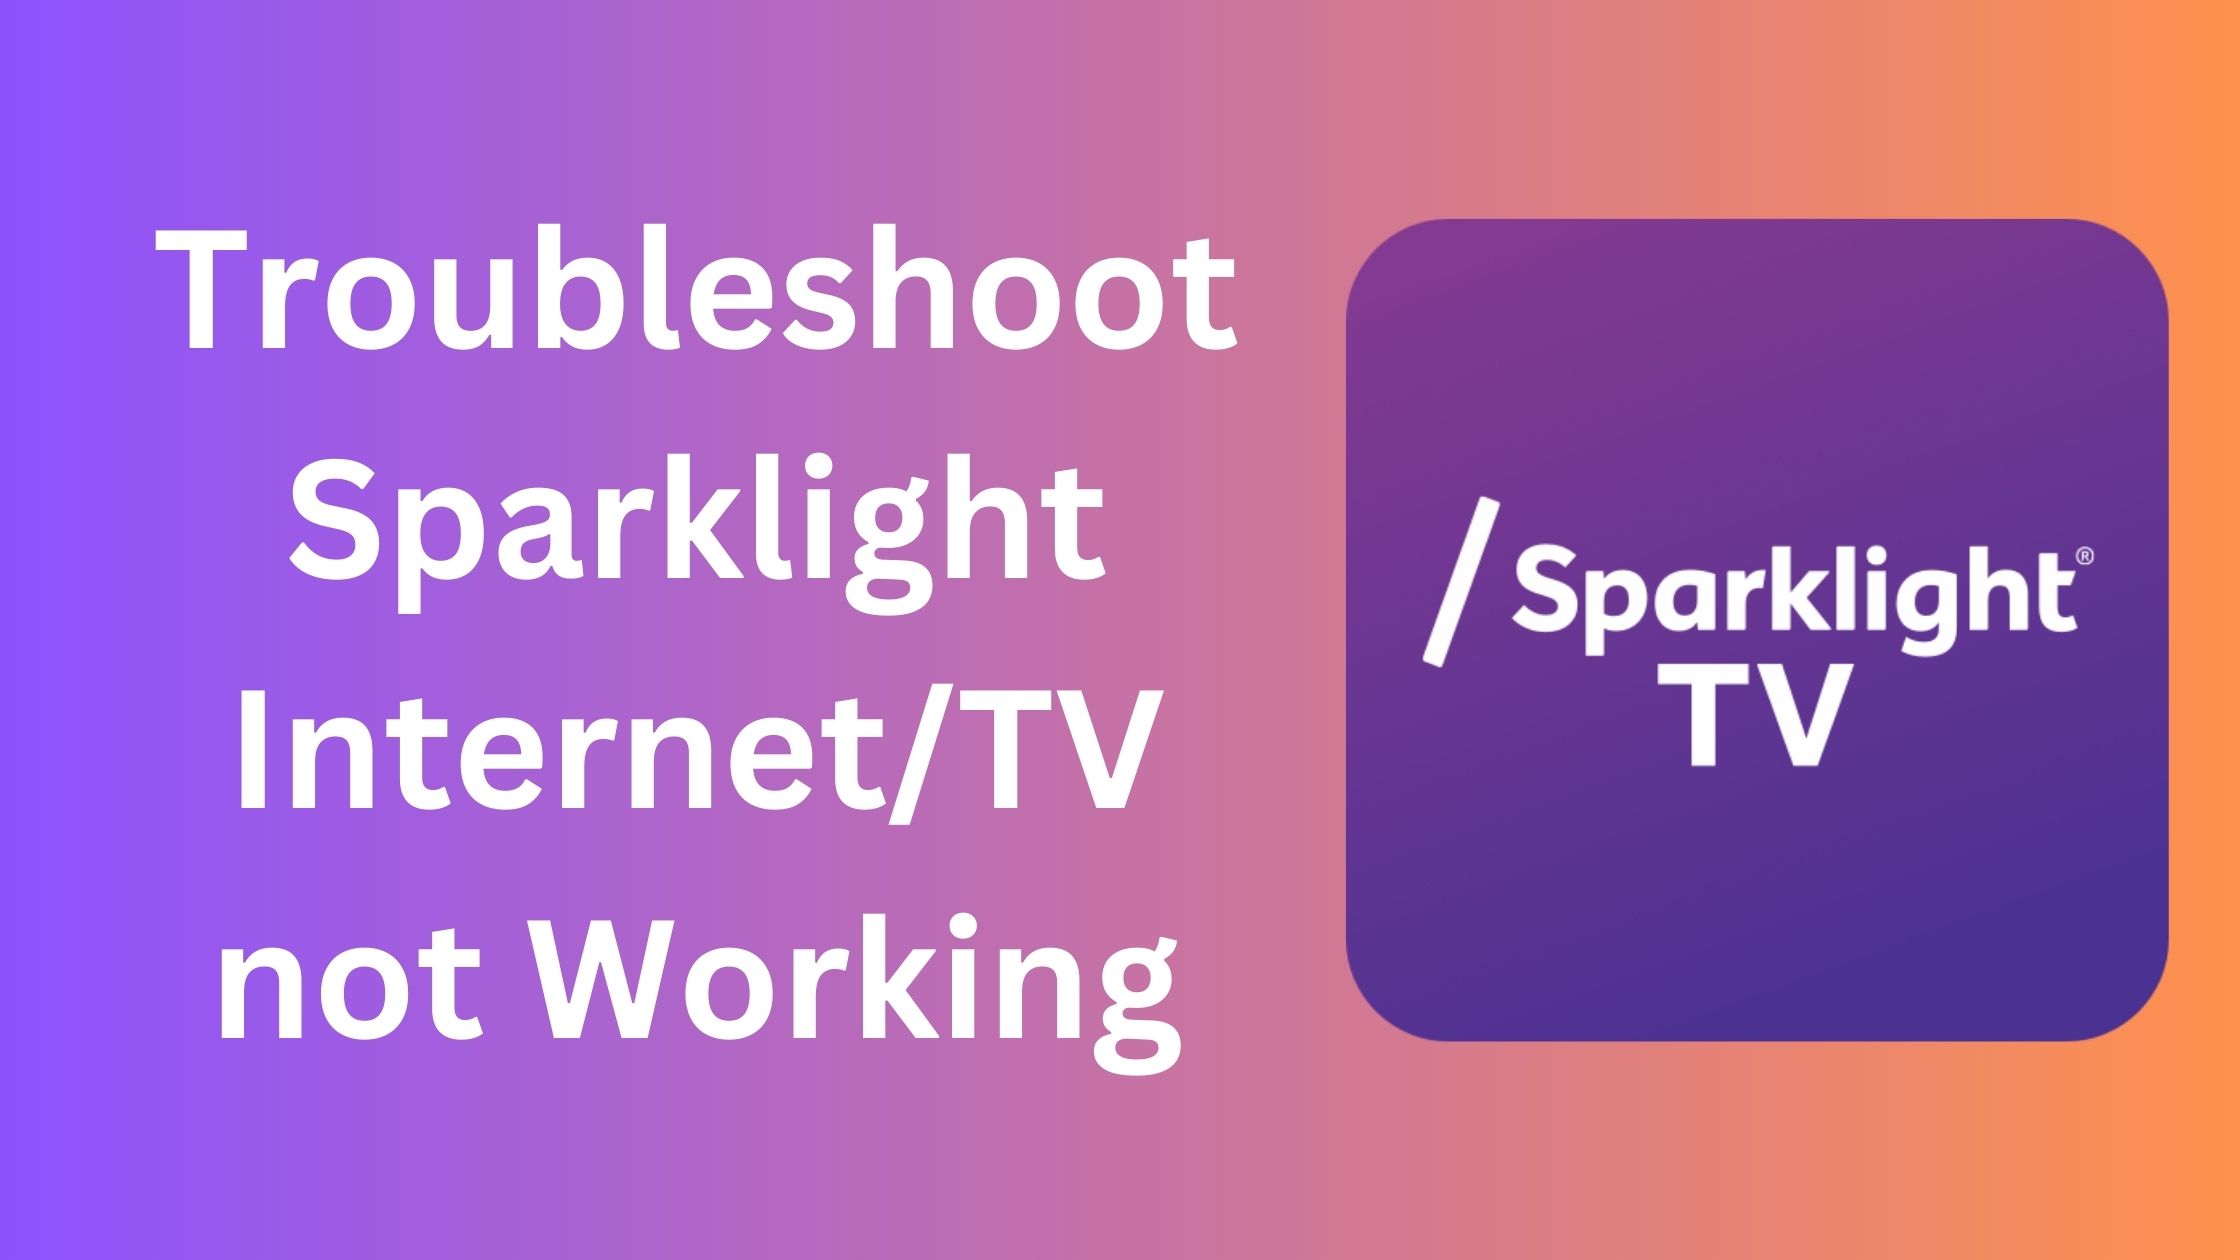 Sparklight Internet not working